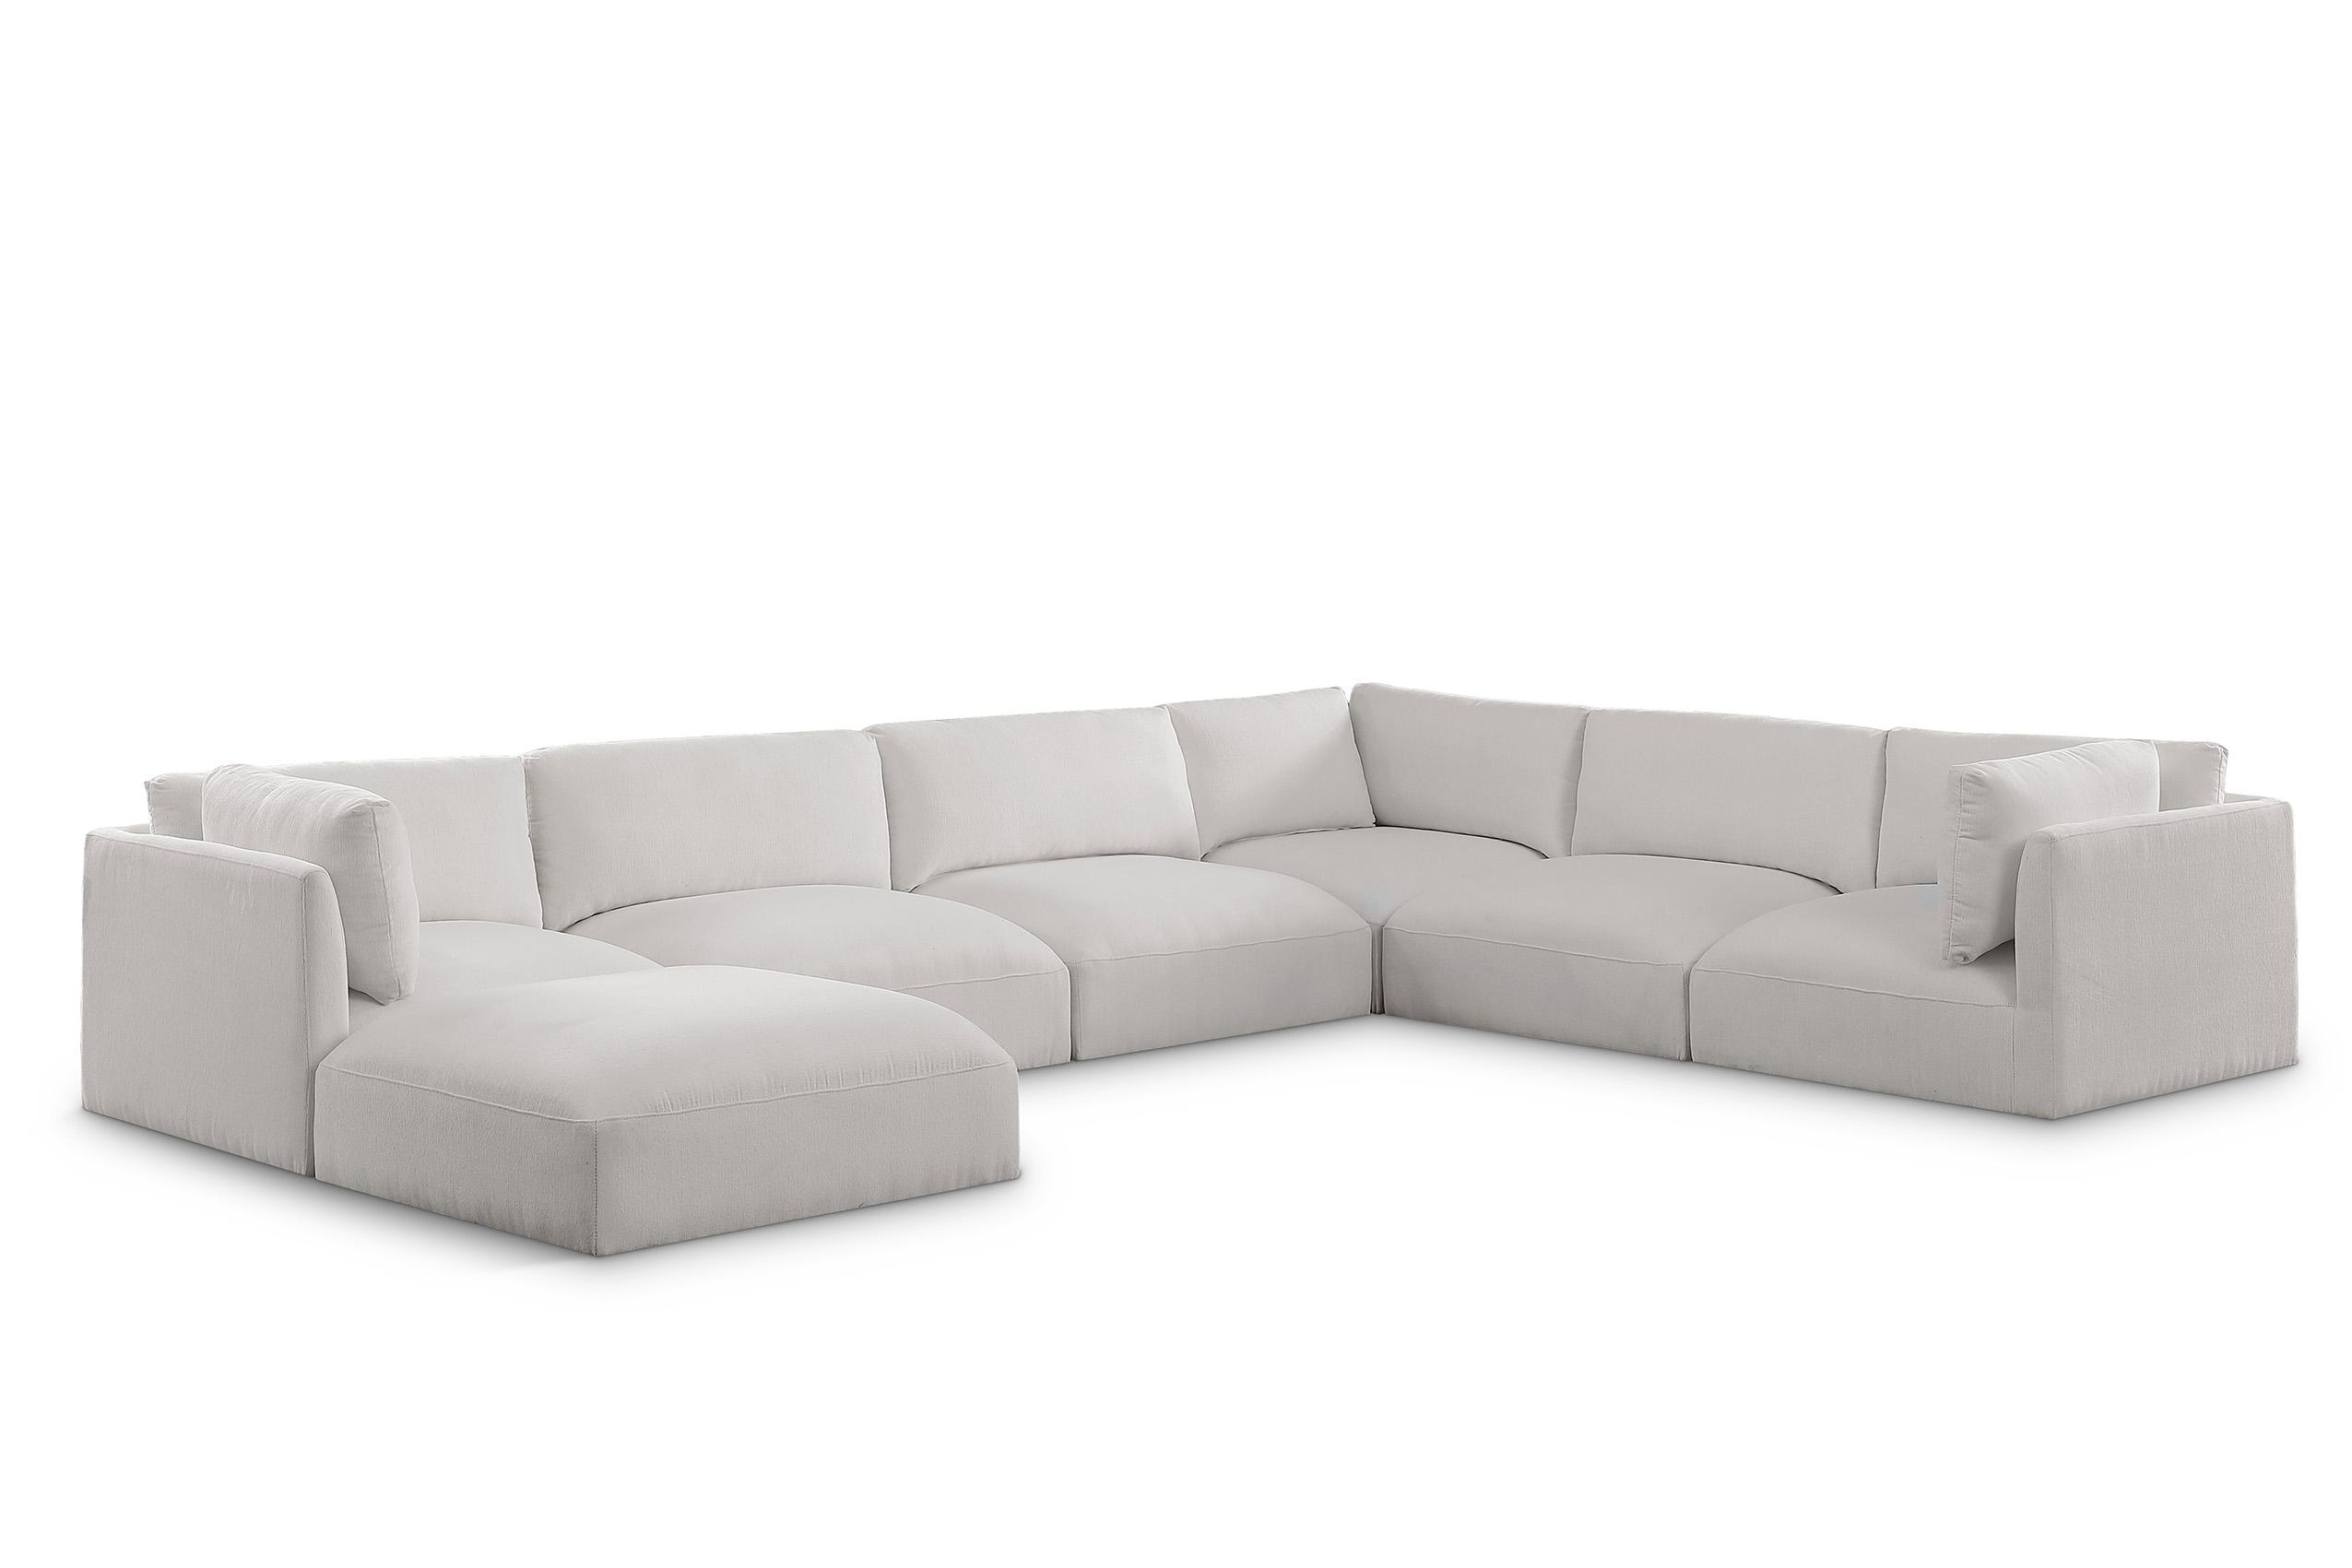 Contemporary, Modern Modular Sectional Sofa EASE 696Cream-Sec7A 696Cream-Sec7A in Cream Fabric